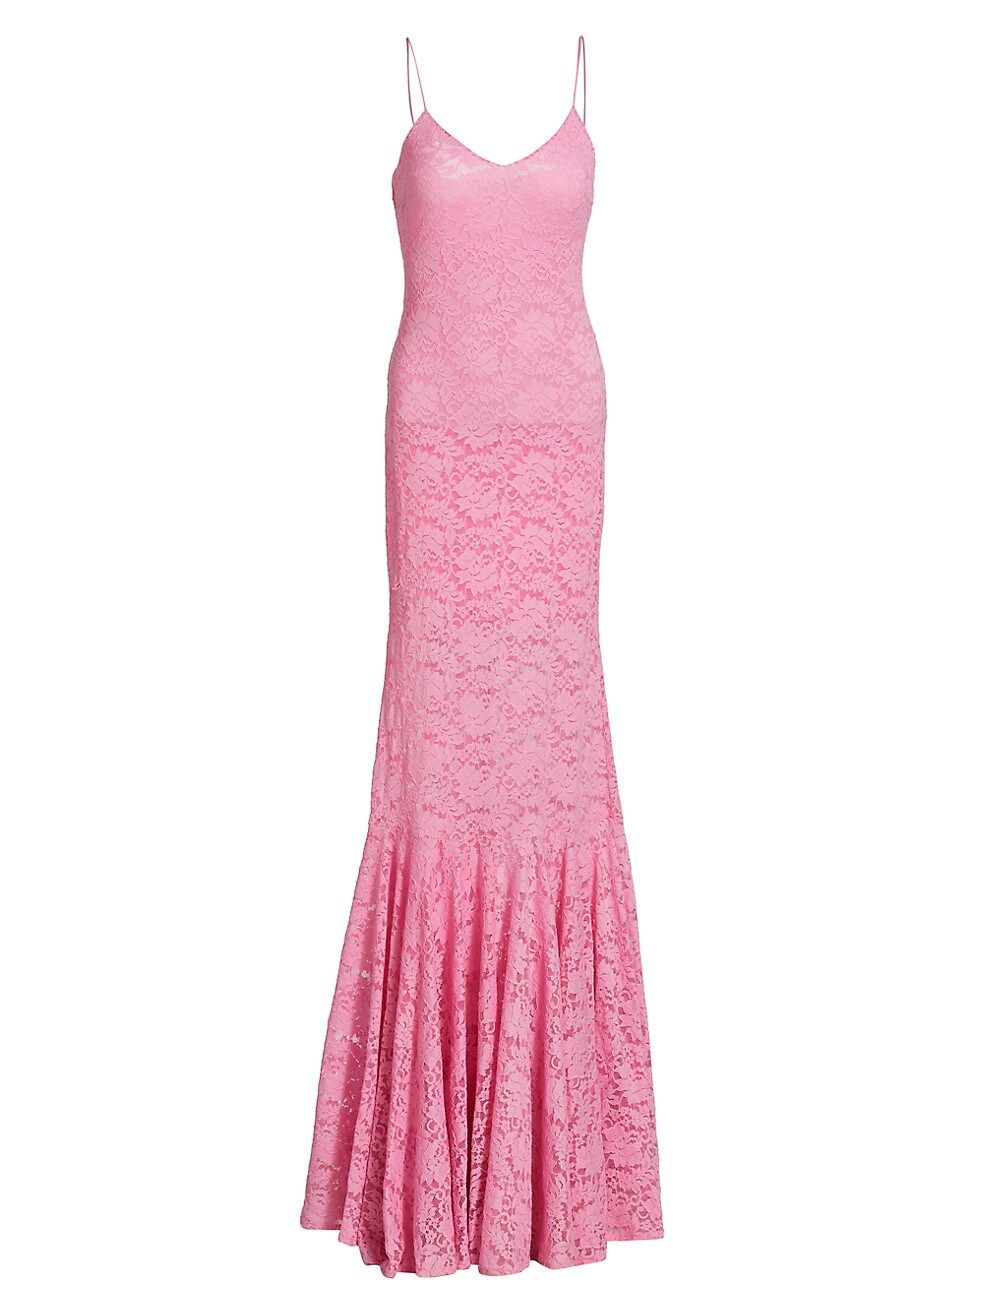 CAROLINE CONSTAS Morgana Floral Lace Mermaid Gown | Saks Fifth Avenue